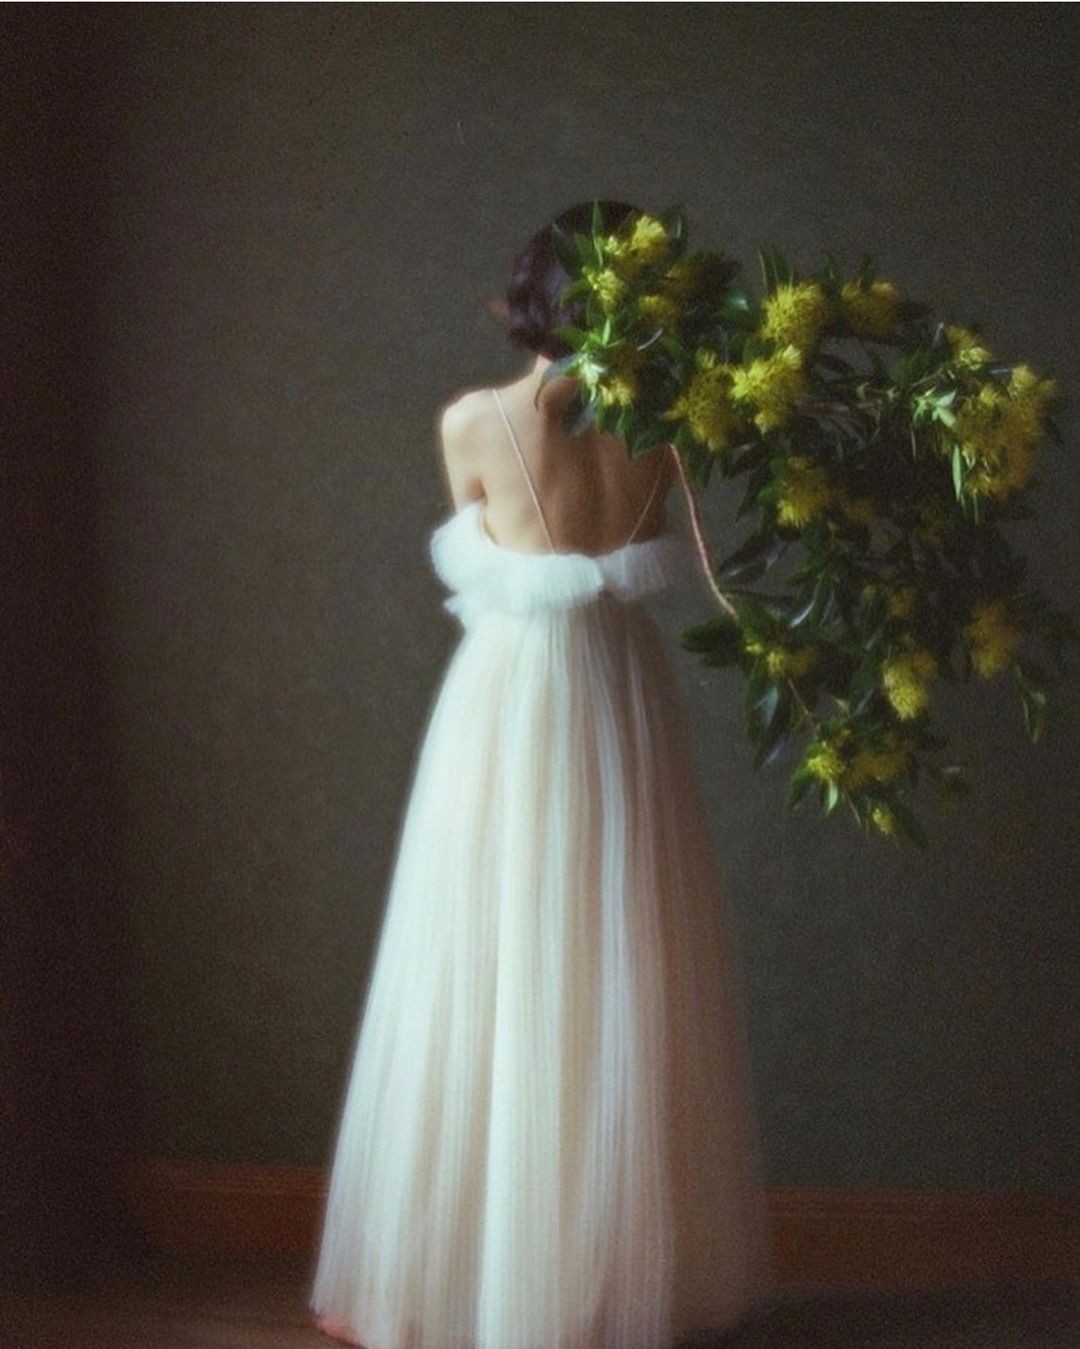 Белое платье. Фотограф szu_ching_photography